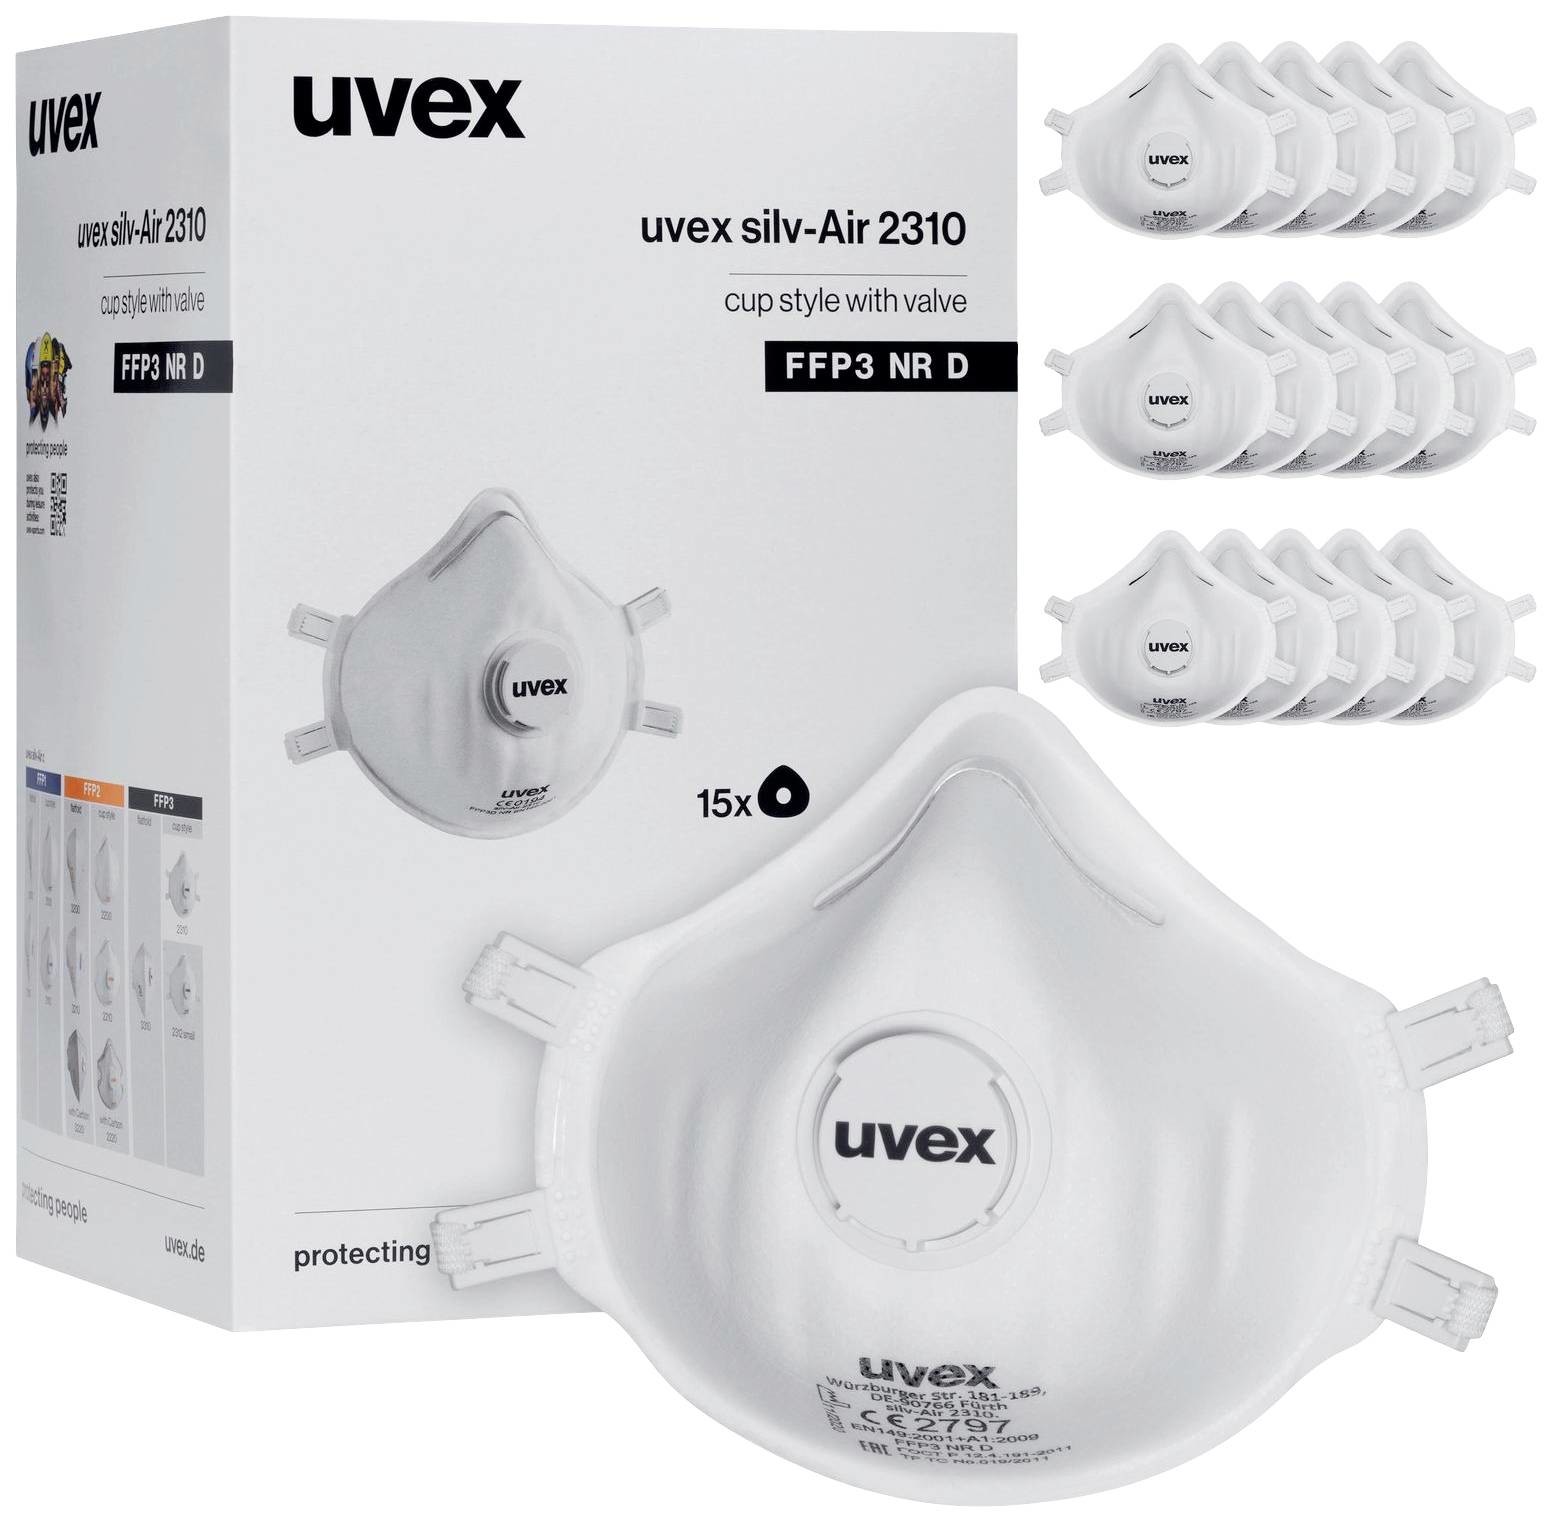 uvex silv-Air classic 2310 8762310 respirátor proti jemnému prachu, s ventilem FFP3 D 15 ks DIN EN 149:2001  plus  A1:2009